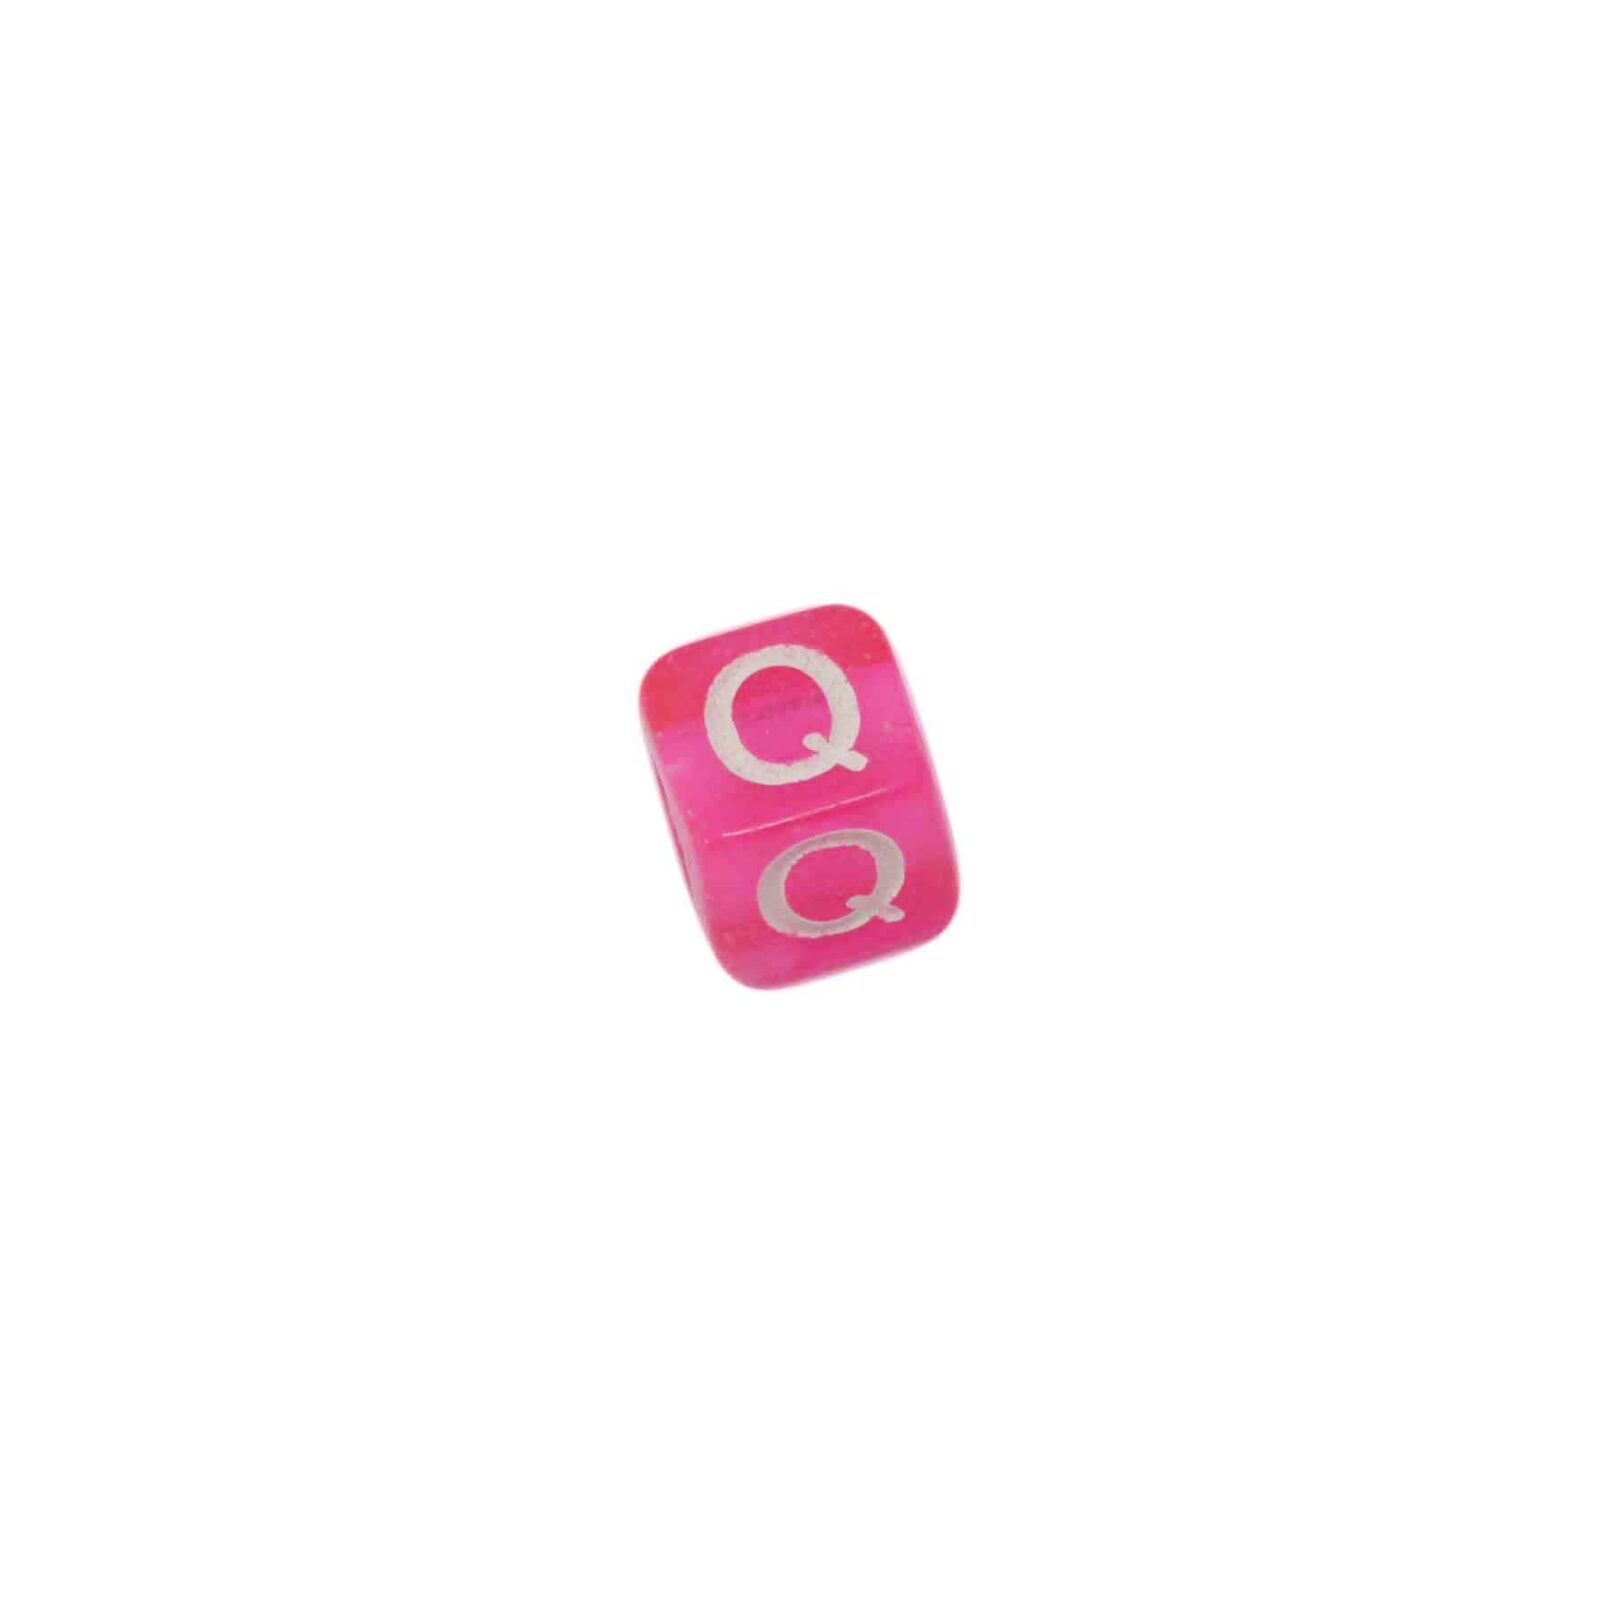 Rood roze letterkraal Q